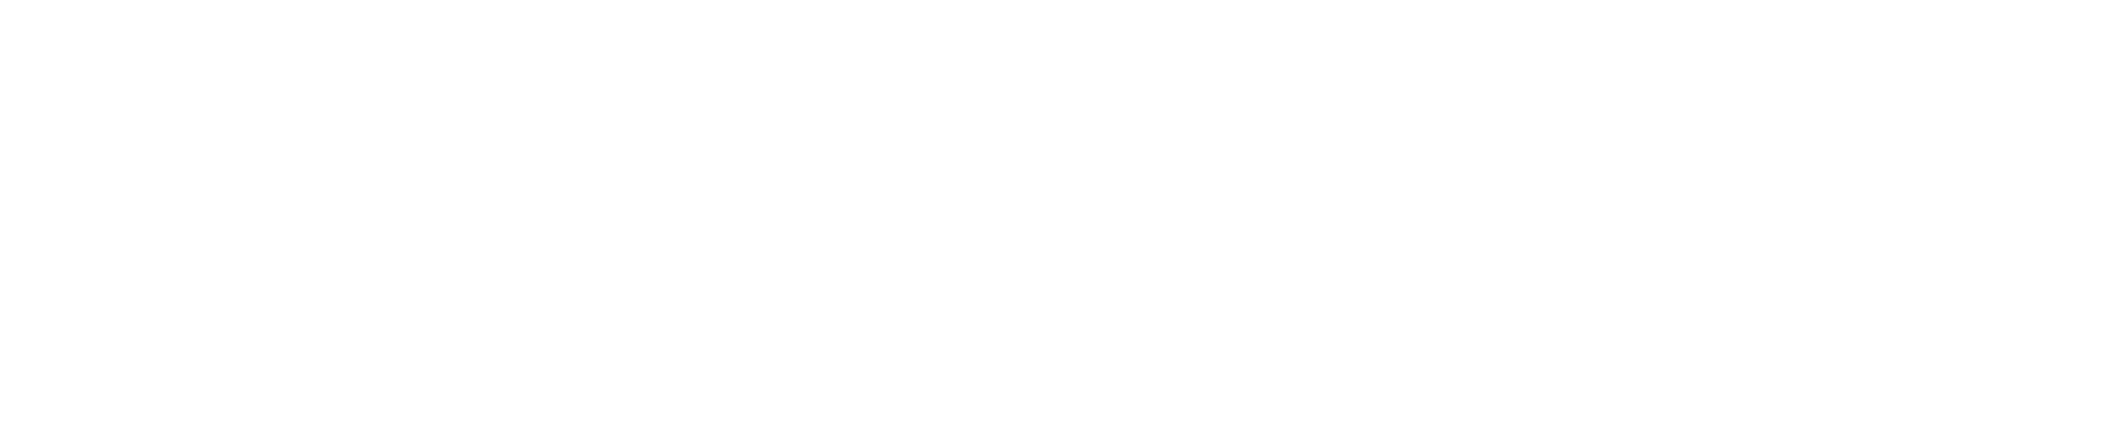 正orma Connect Logo